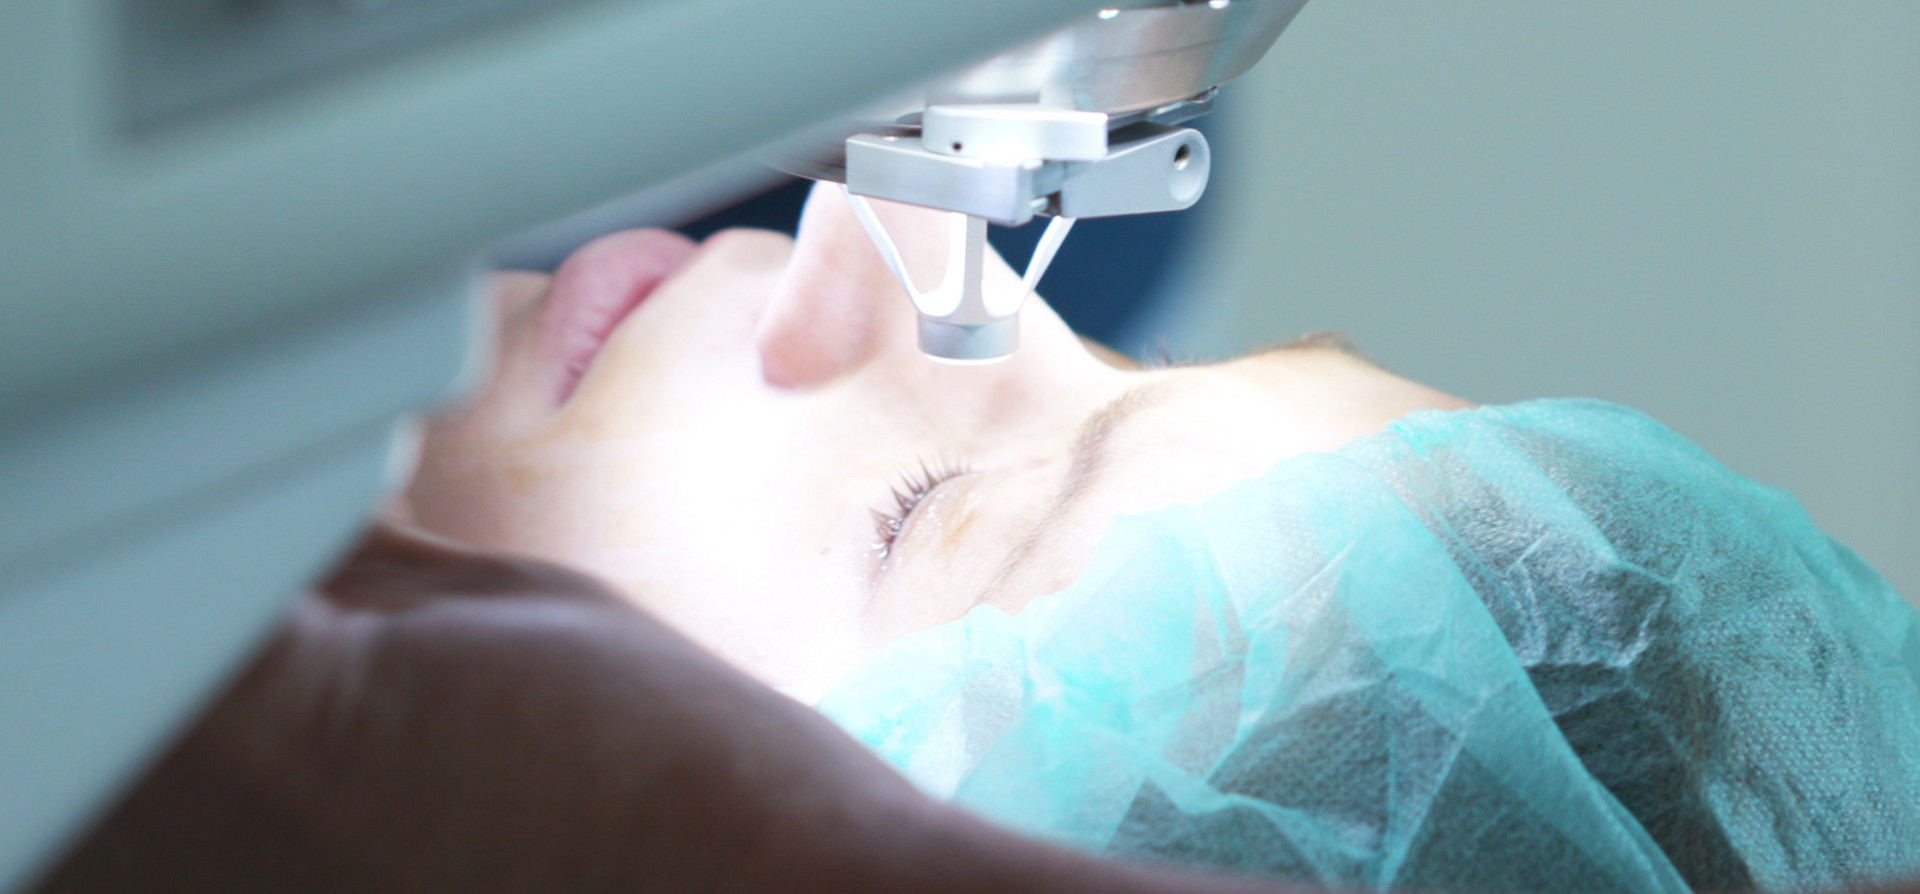 Augen lasern mit modernster Technologie. Ihre Augen-OP in der Augenlaserklinik OWL 